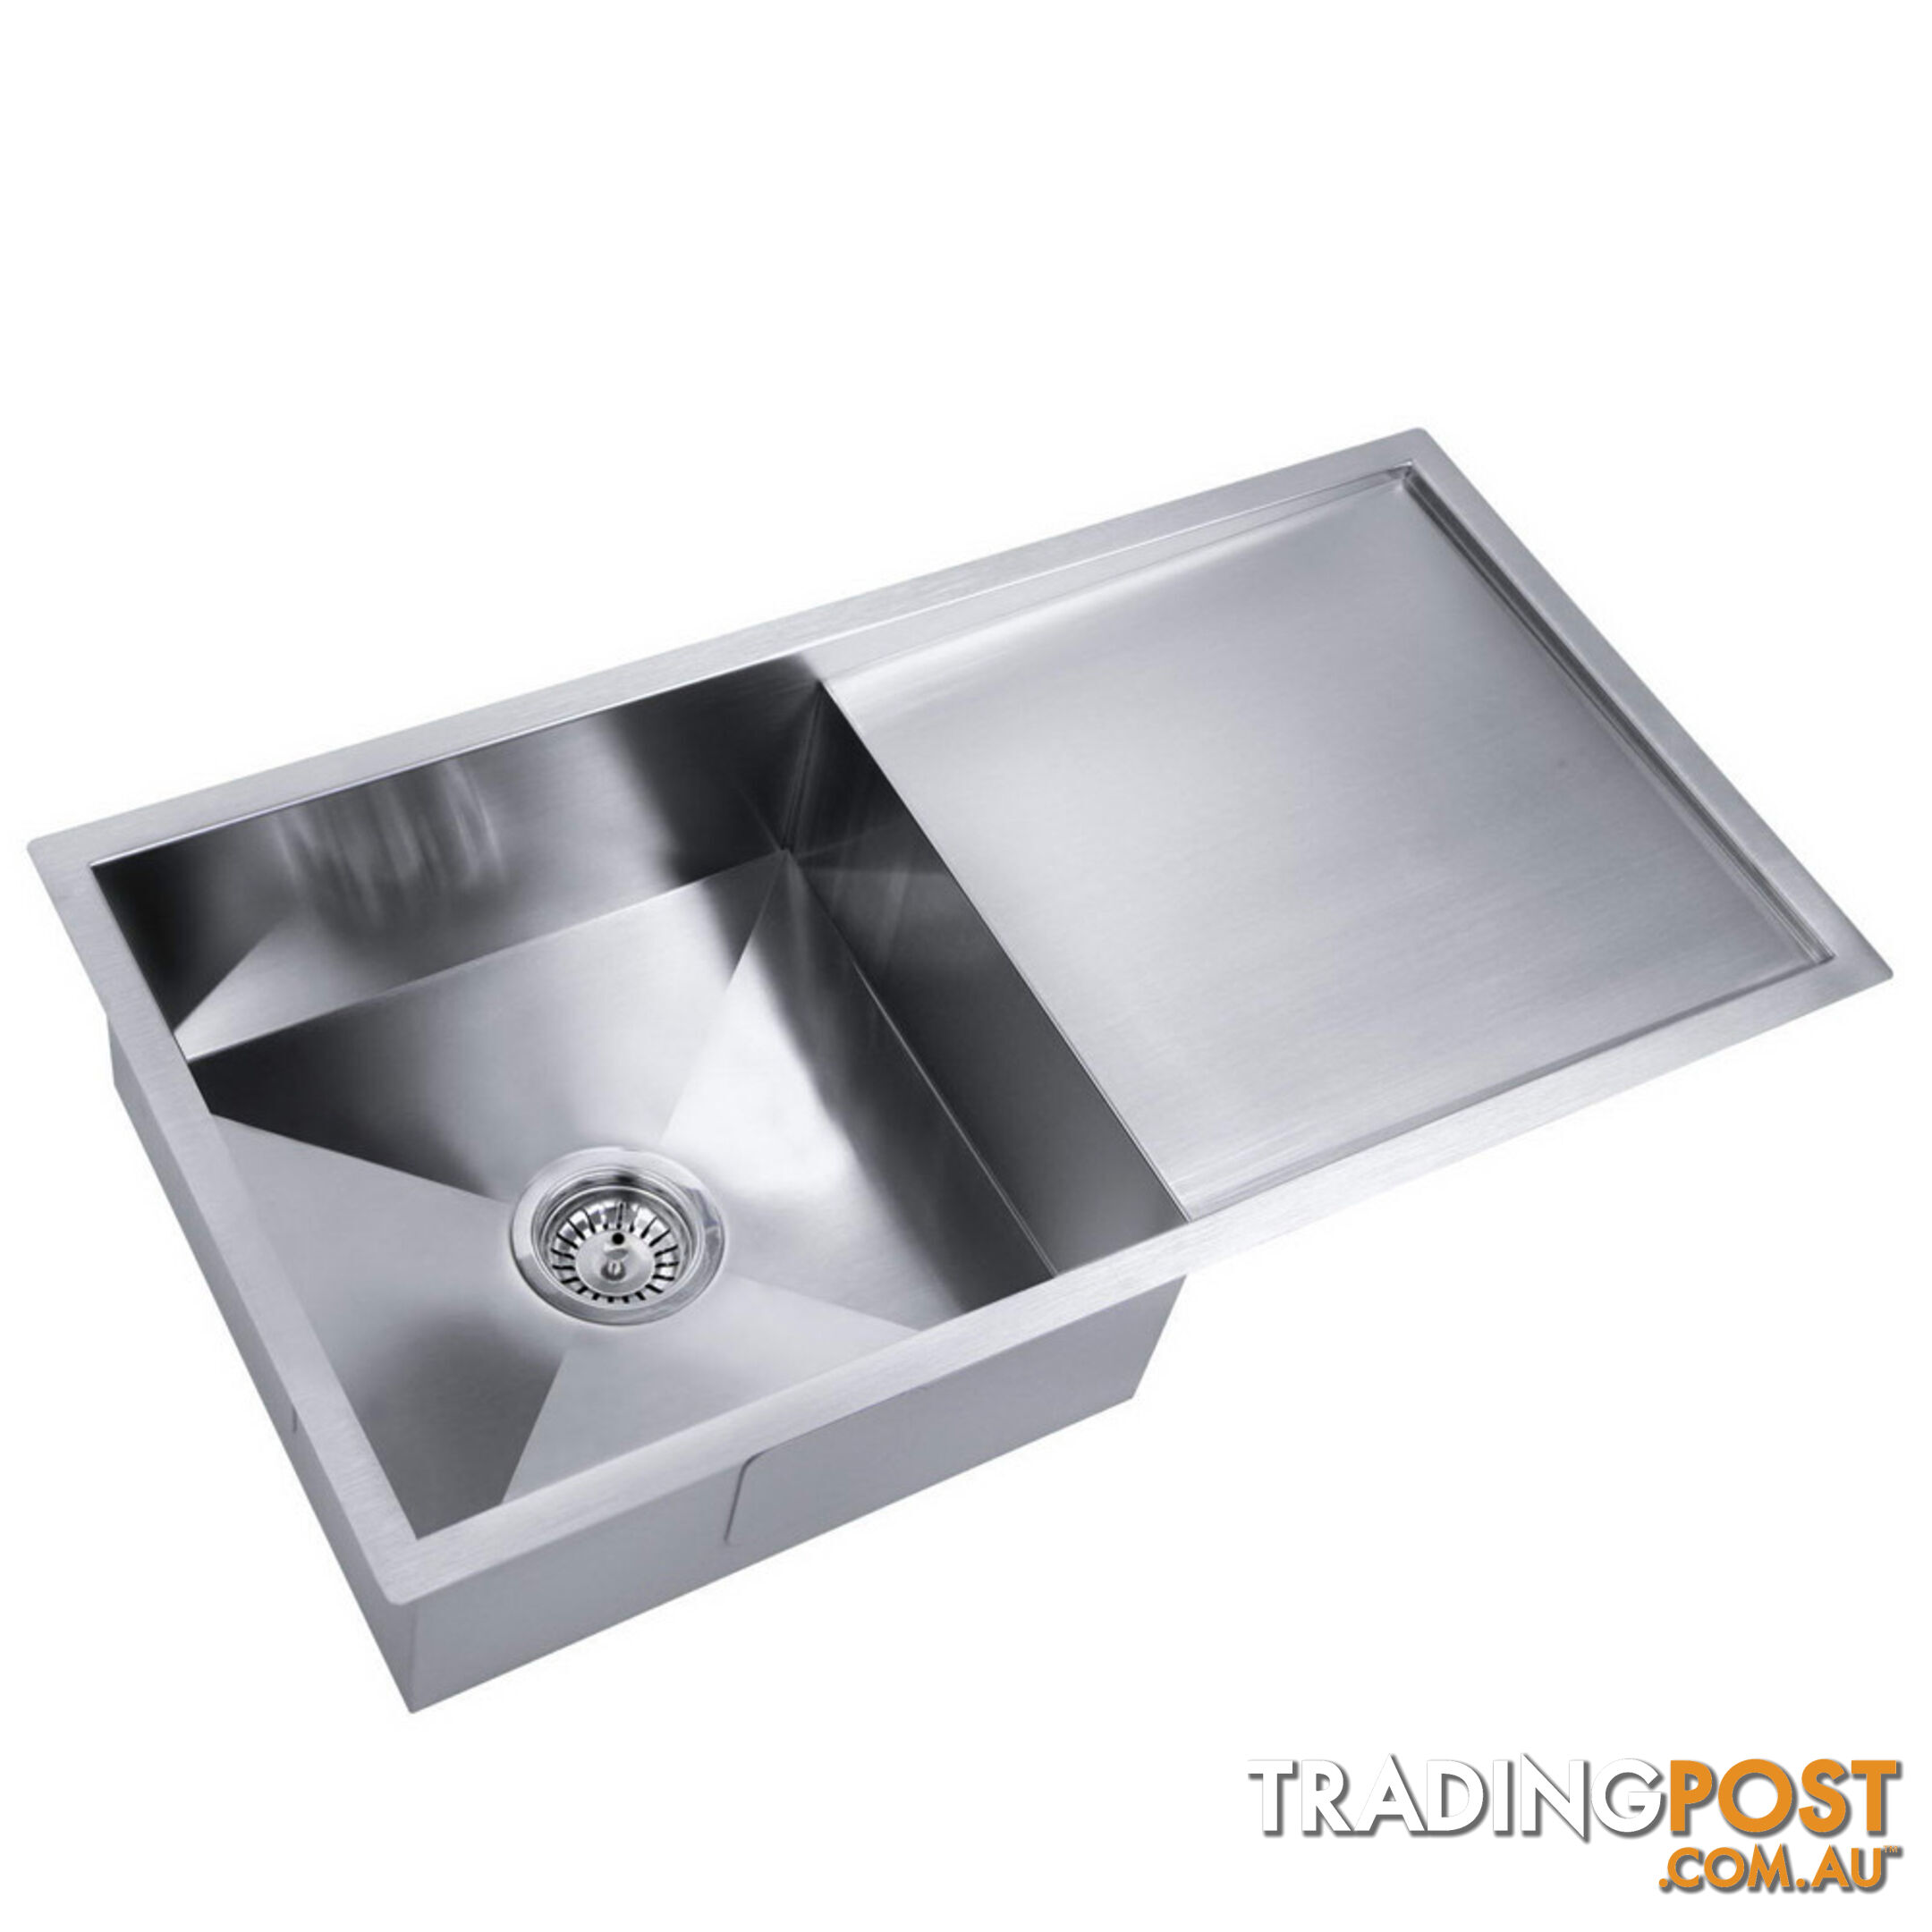 Stainless Steel Kitchen/Laundry Sink w/ Strainer Waste 960x450mm